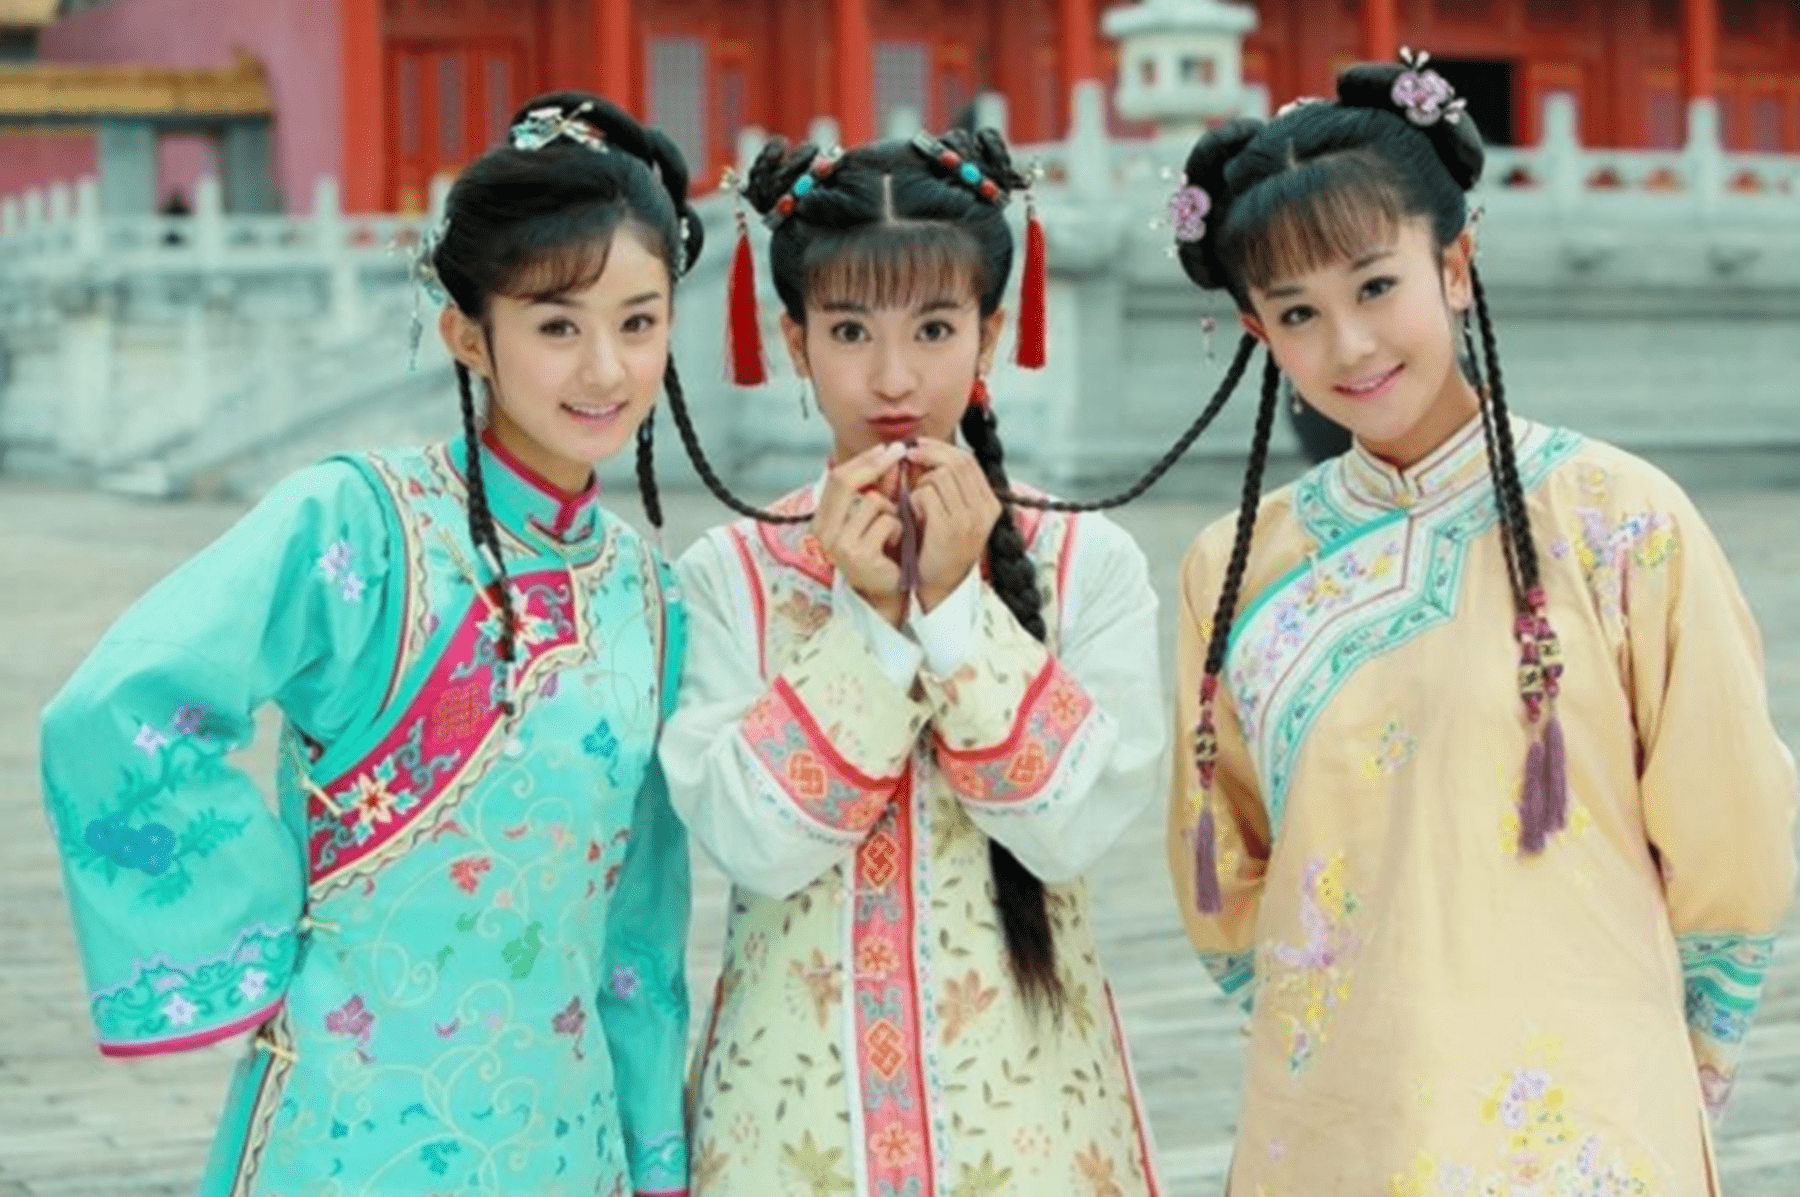 原创《新还珠格格》播出9年,三位女主演差距大,赵丽颖成为一线女星